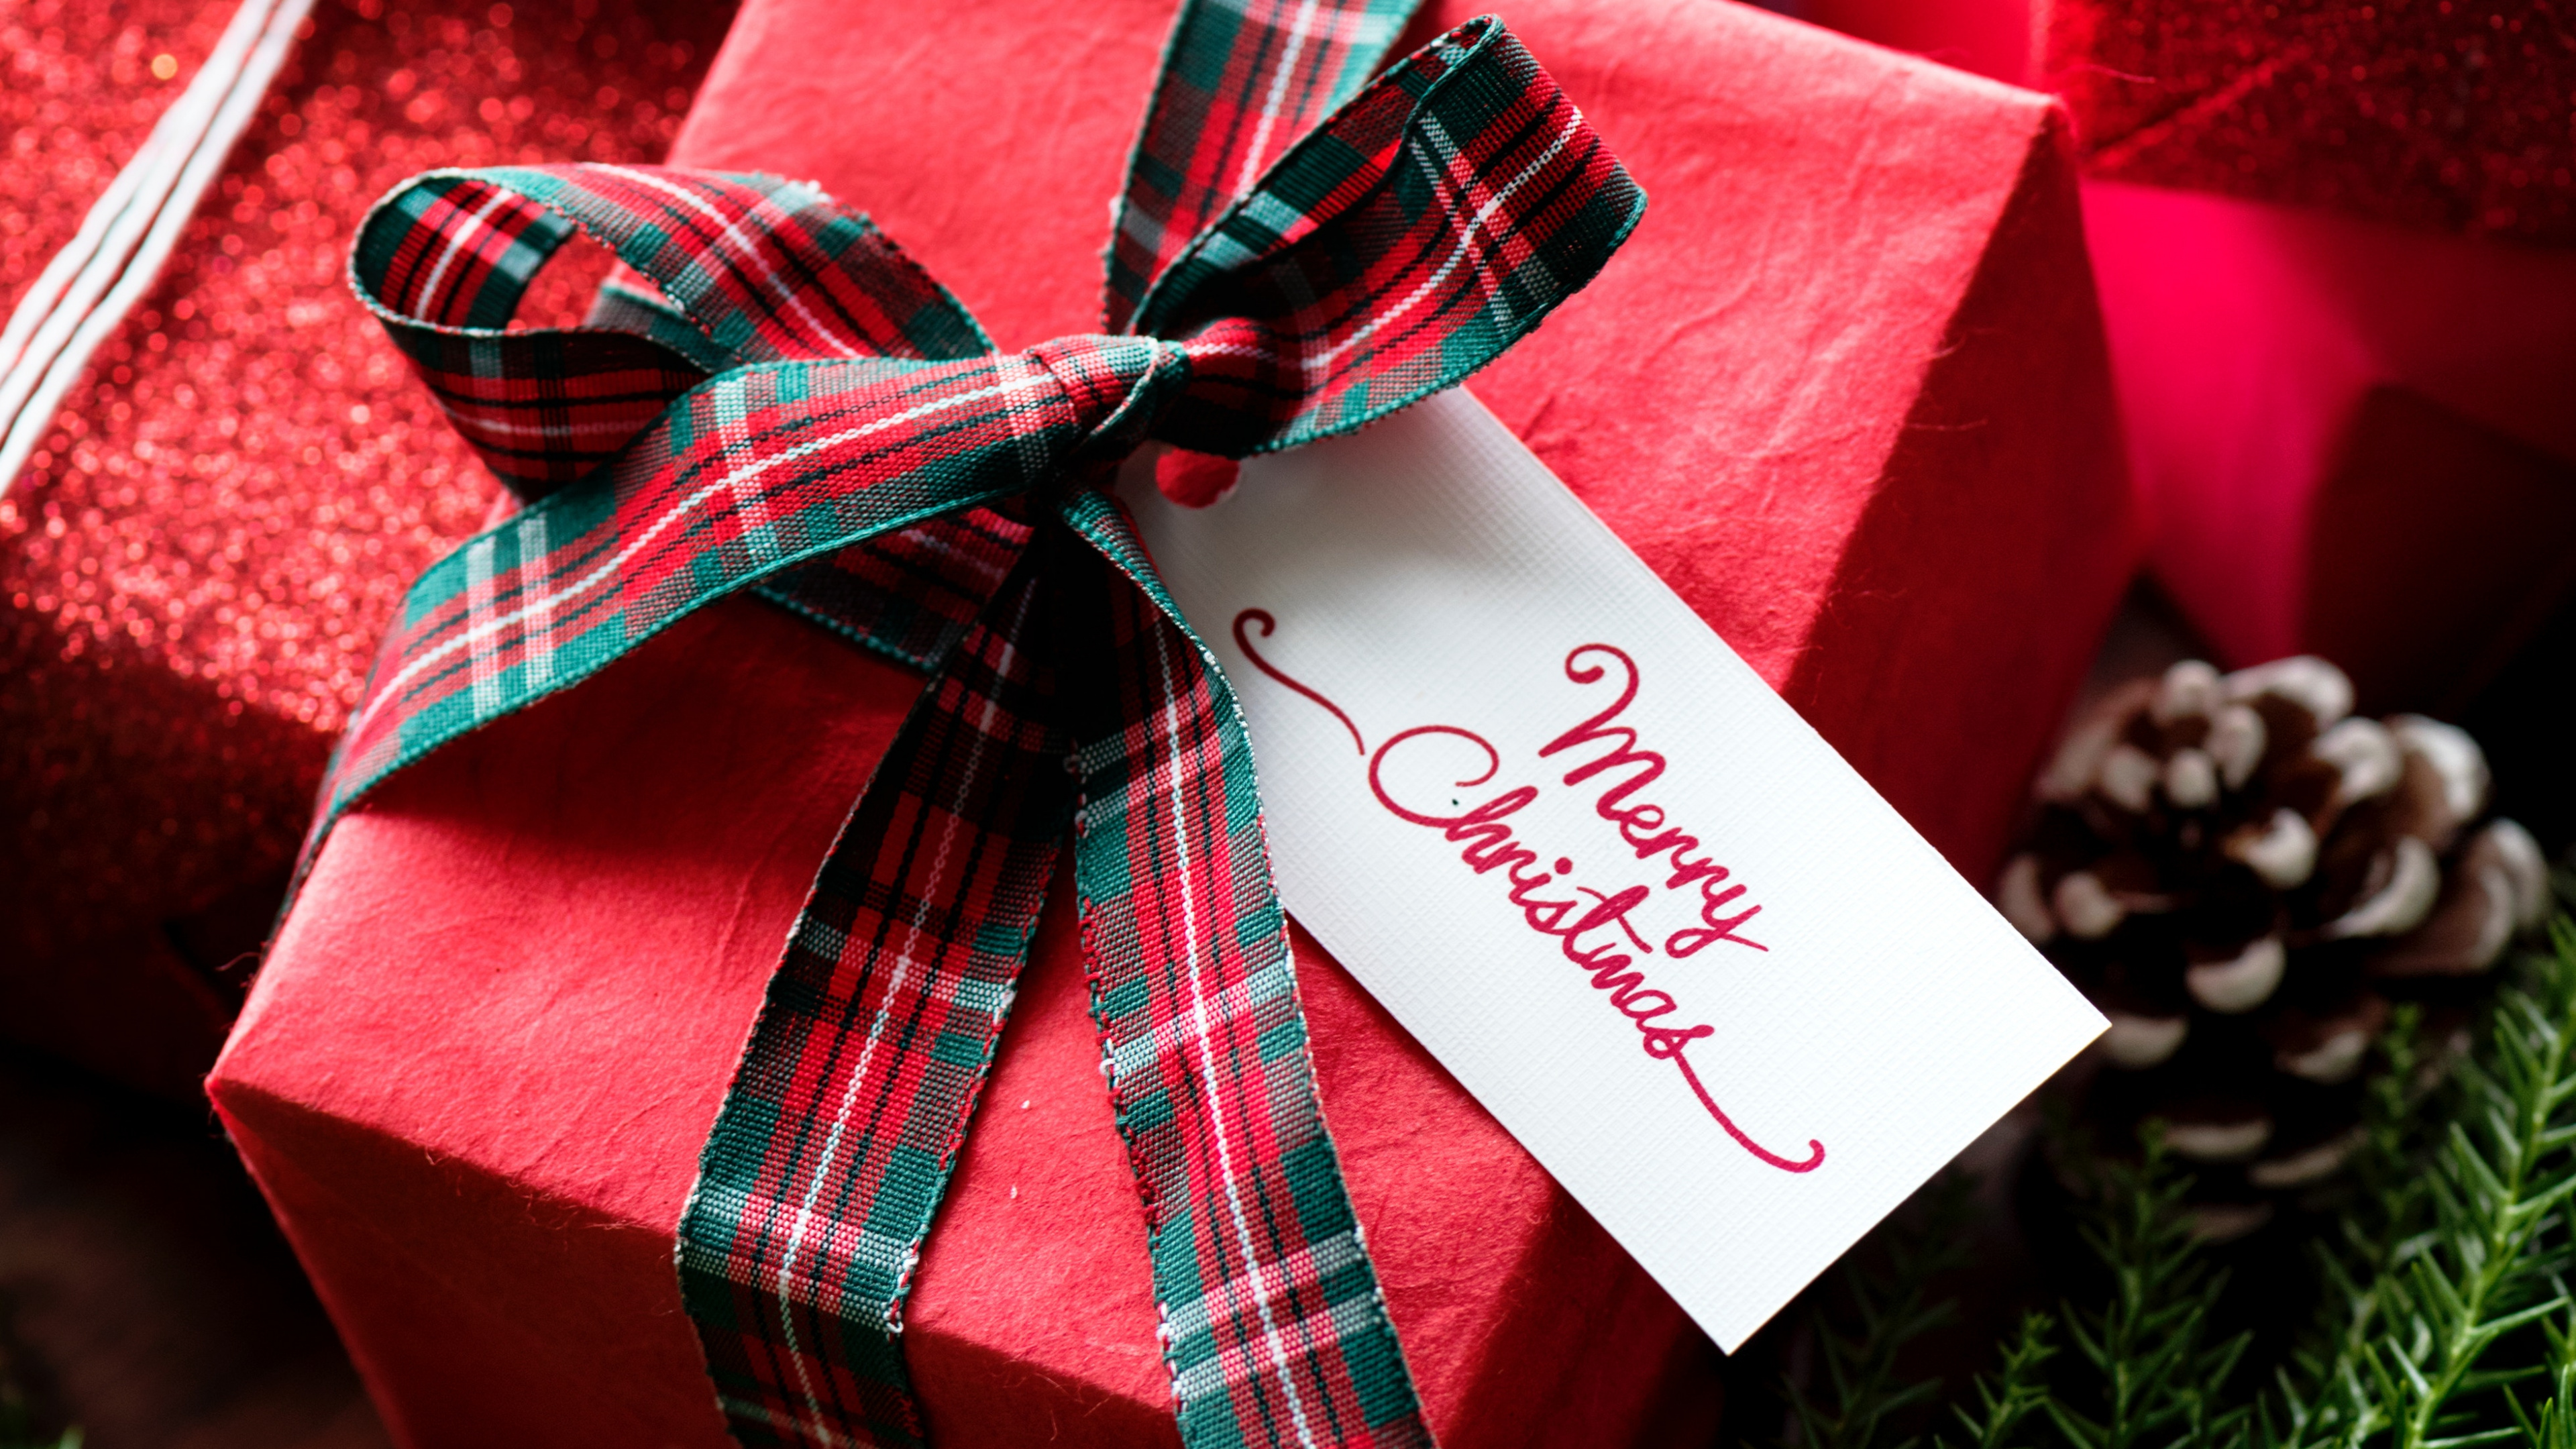 礼物, 圣诞节礼物, 礼品包装, 圣诞节那天, 丝带 壁纸 3840x2160 允许